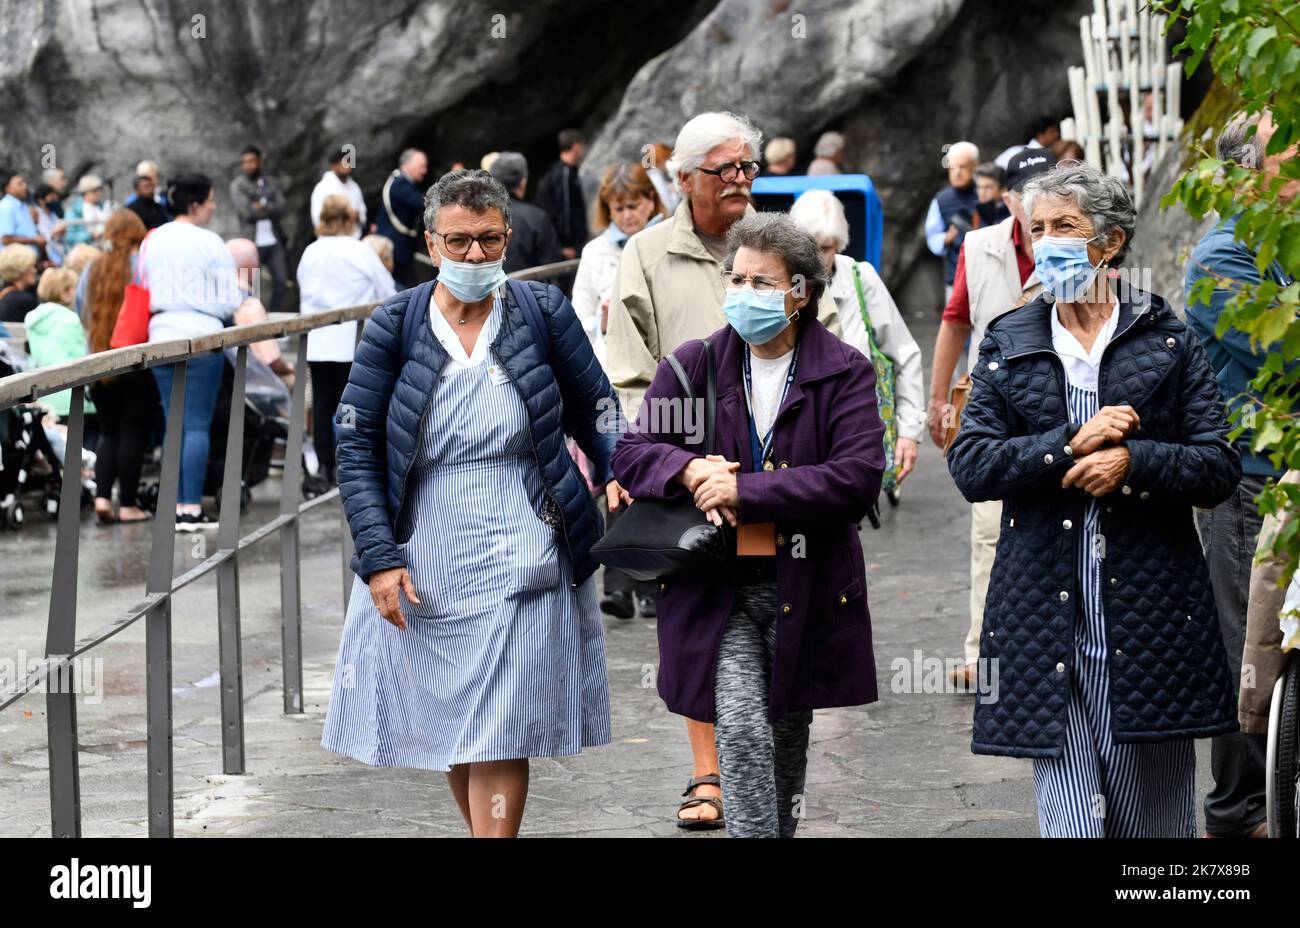 Lourdes, Hautes-Pyrénées, France. Pèlerins portant des masques Covid Banque D'Images